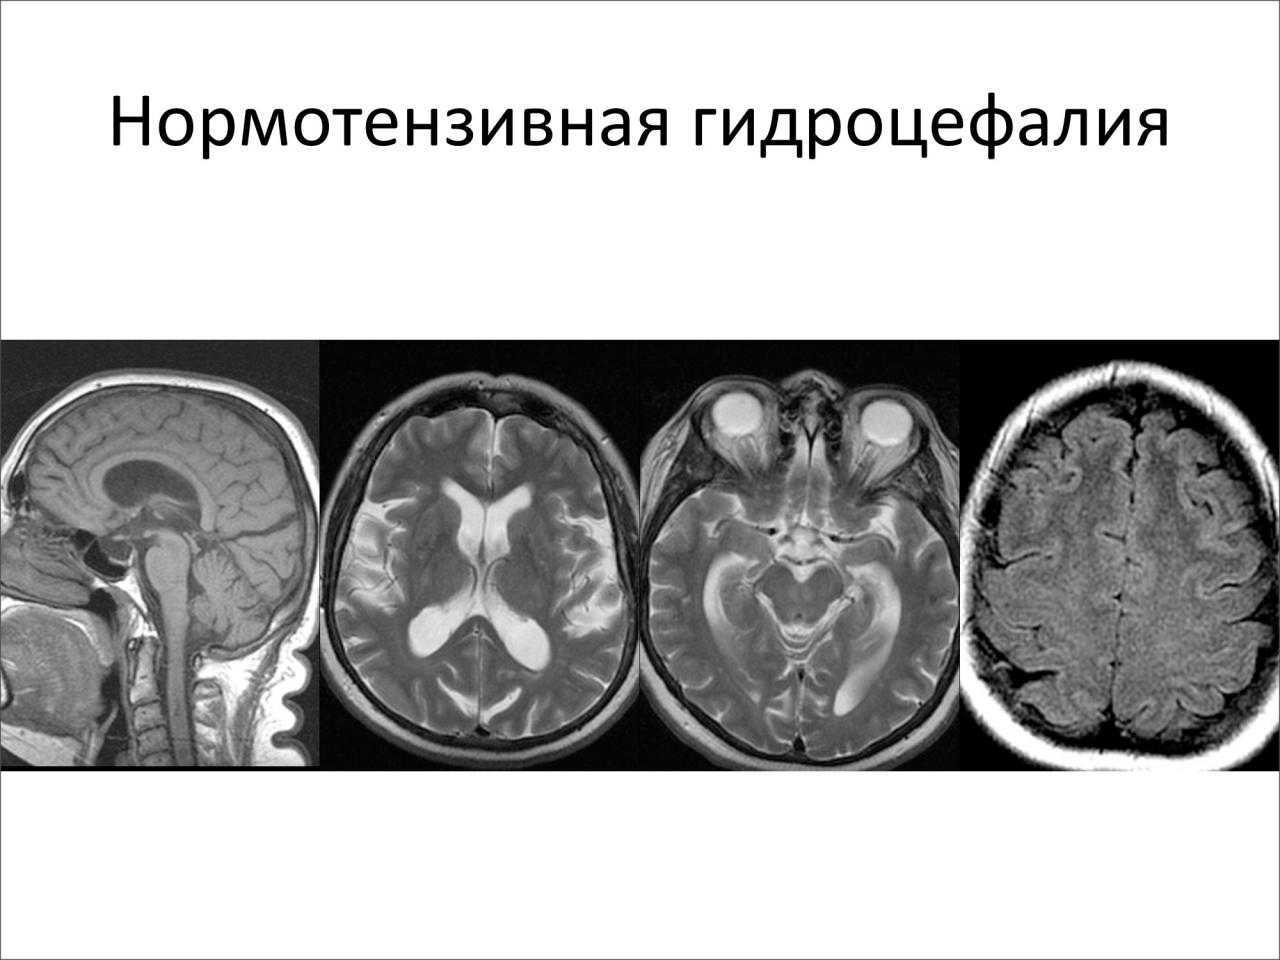 Причины гидроцефалии мозга. Клинические симптомы гидроцефалии. Нормотензивная гидроцефалия мрт. Наружная гидроцефалия головного мозга кт. Компьютерная томография головного мозга гидроцефалия.